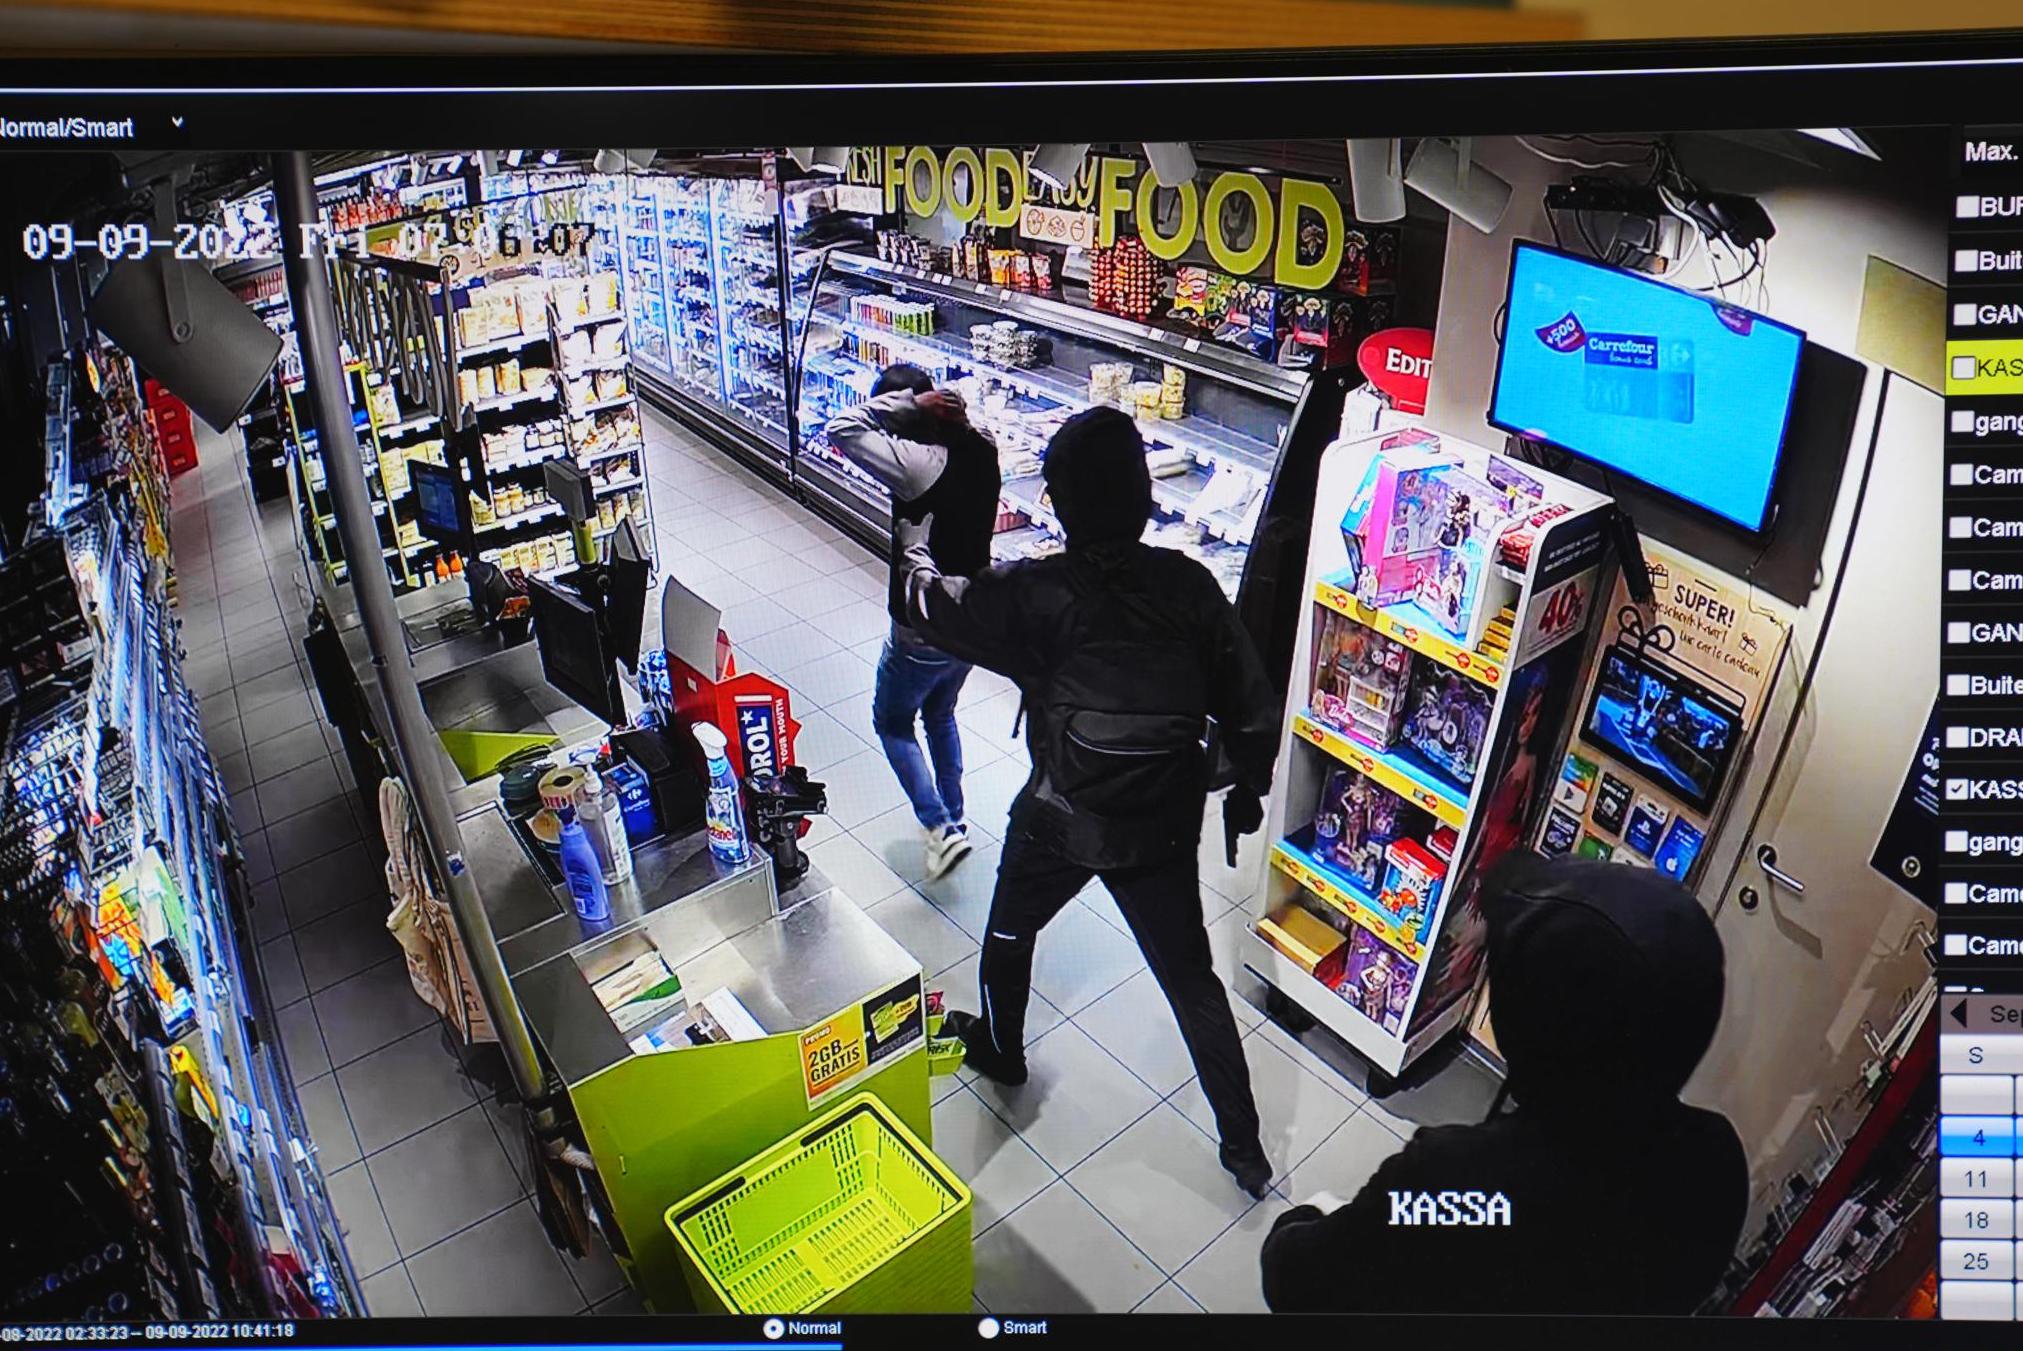 Супермаркет в районе вокзала Гента ограблен двумя мужчинами в масках: сотруднику угрожали огнестрельным оружием (Гент)